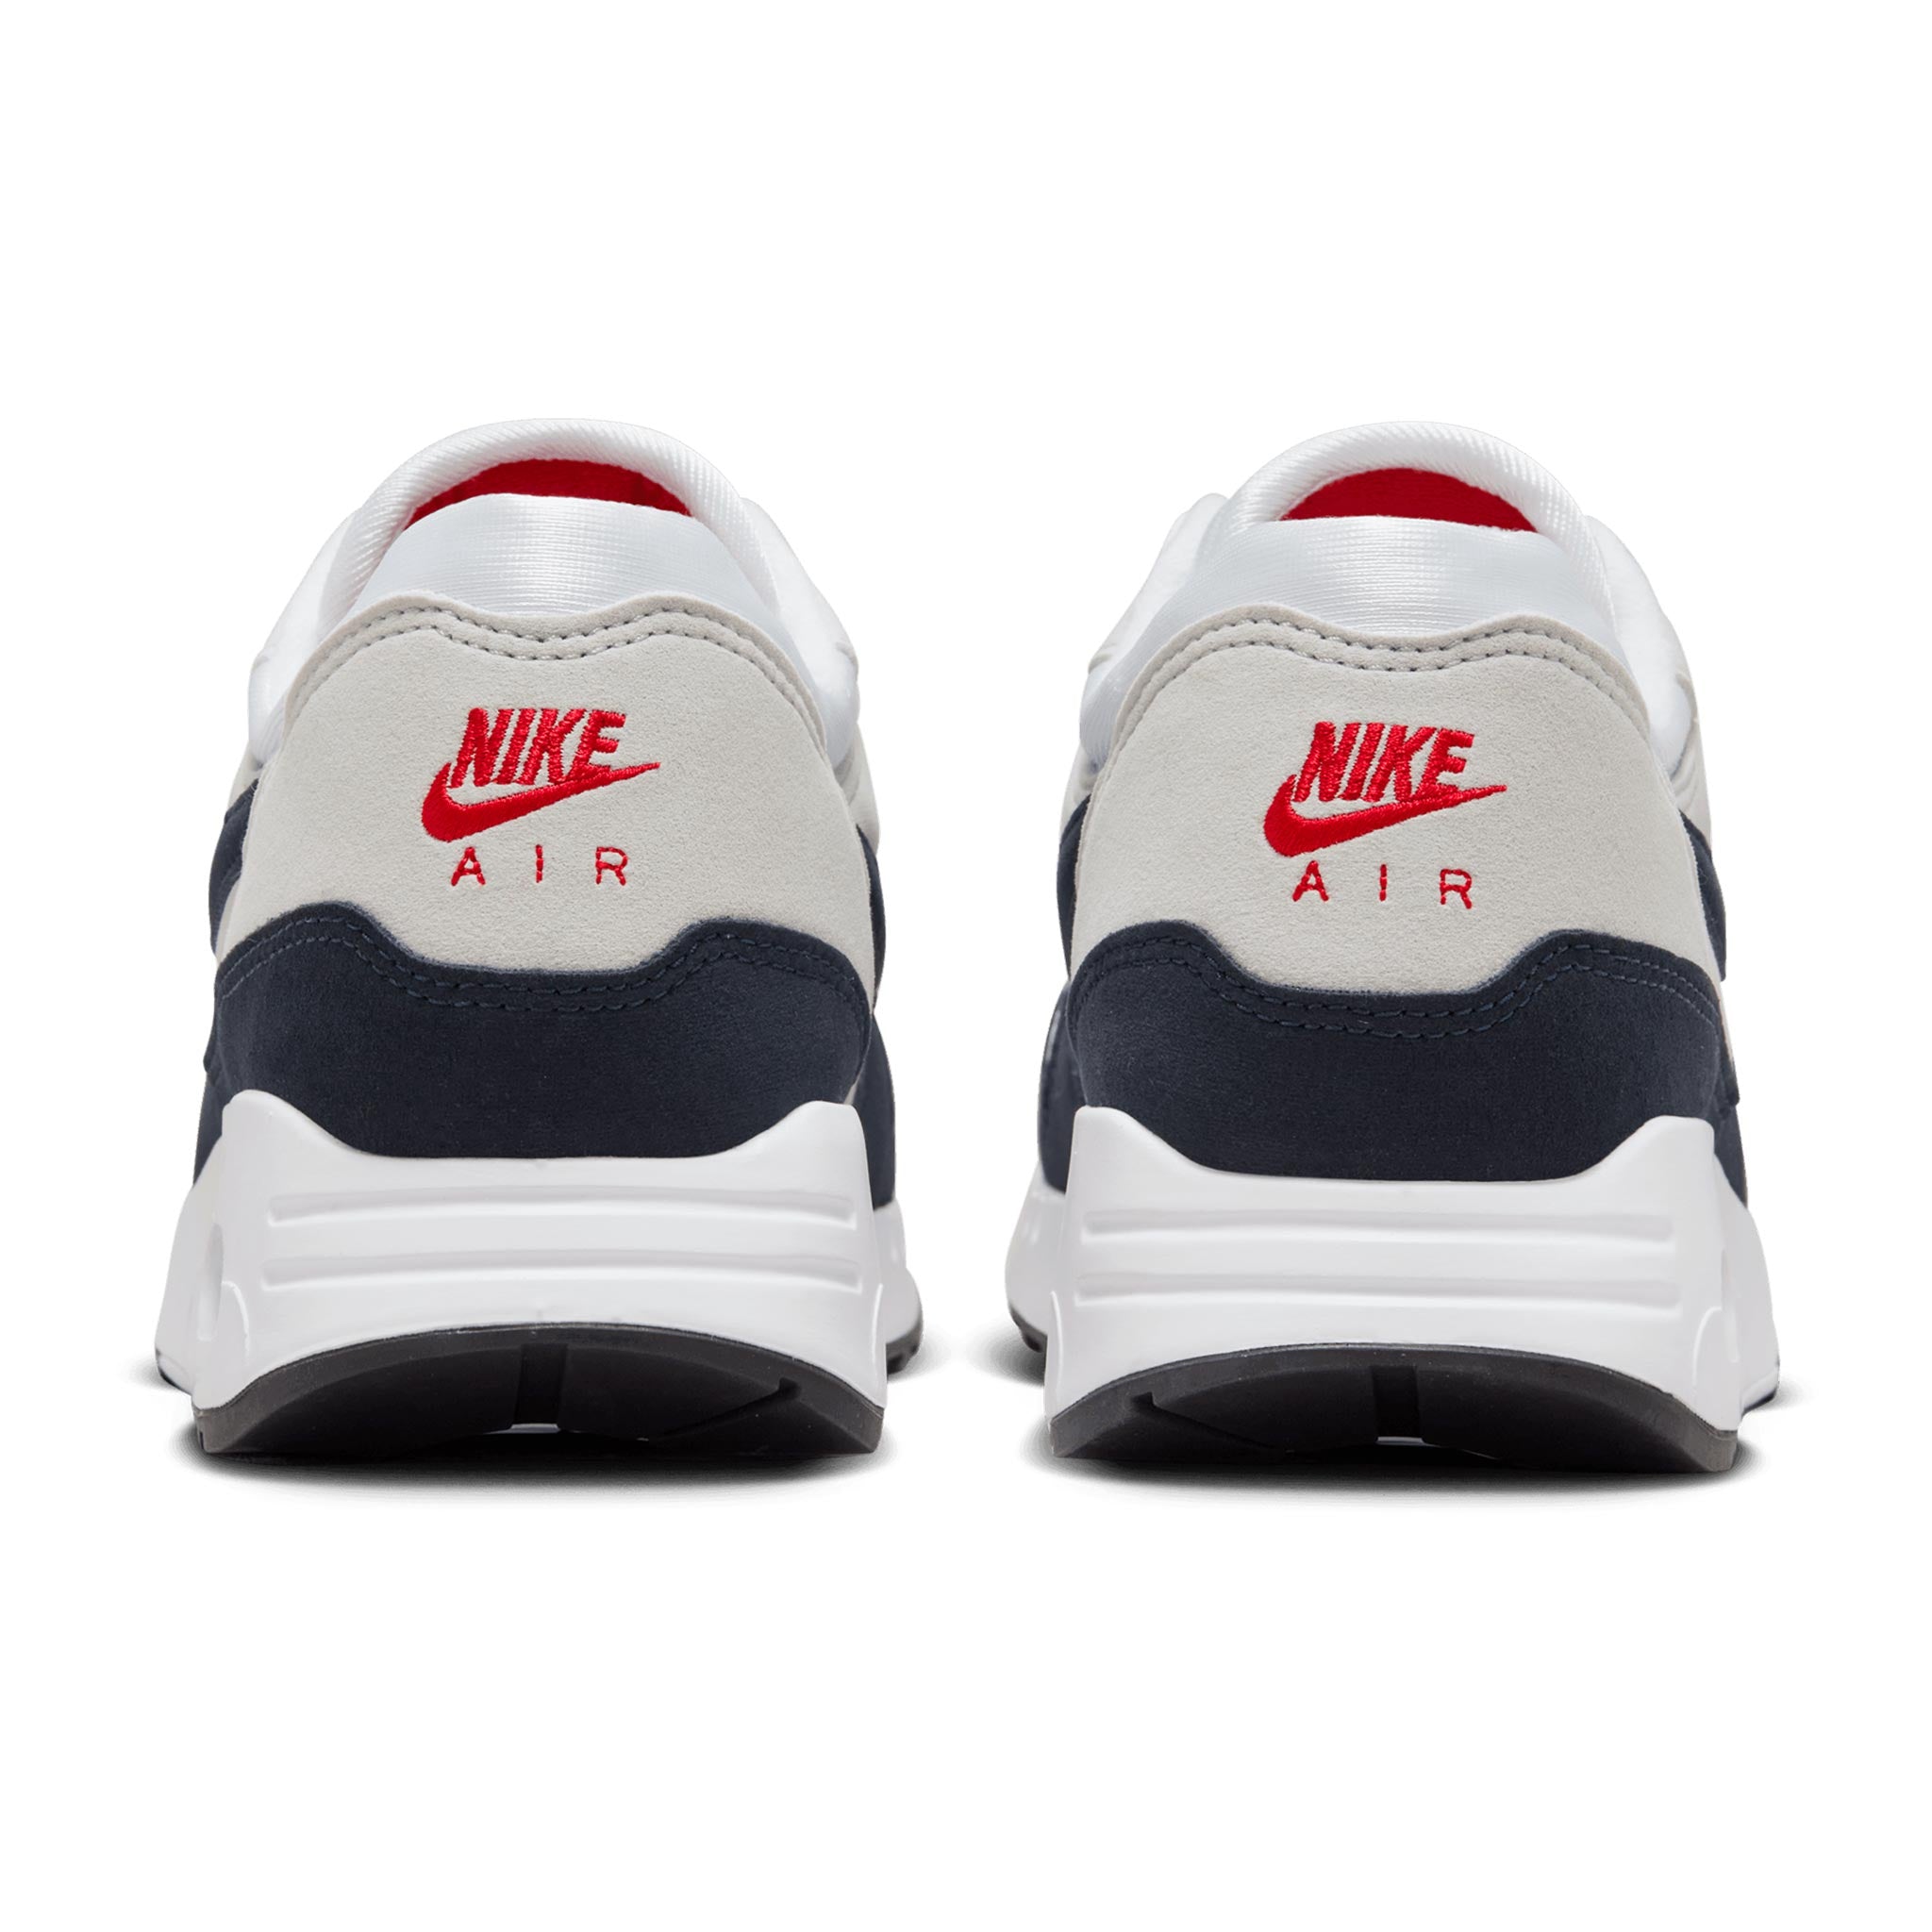 zapatillas de running Nike hombre ritmo bajo apoyo talón talla 31